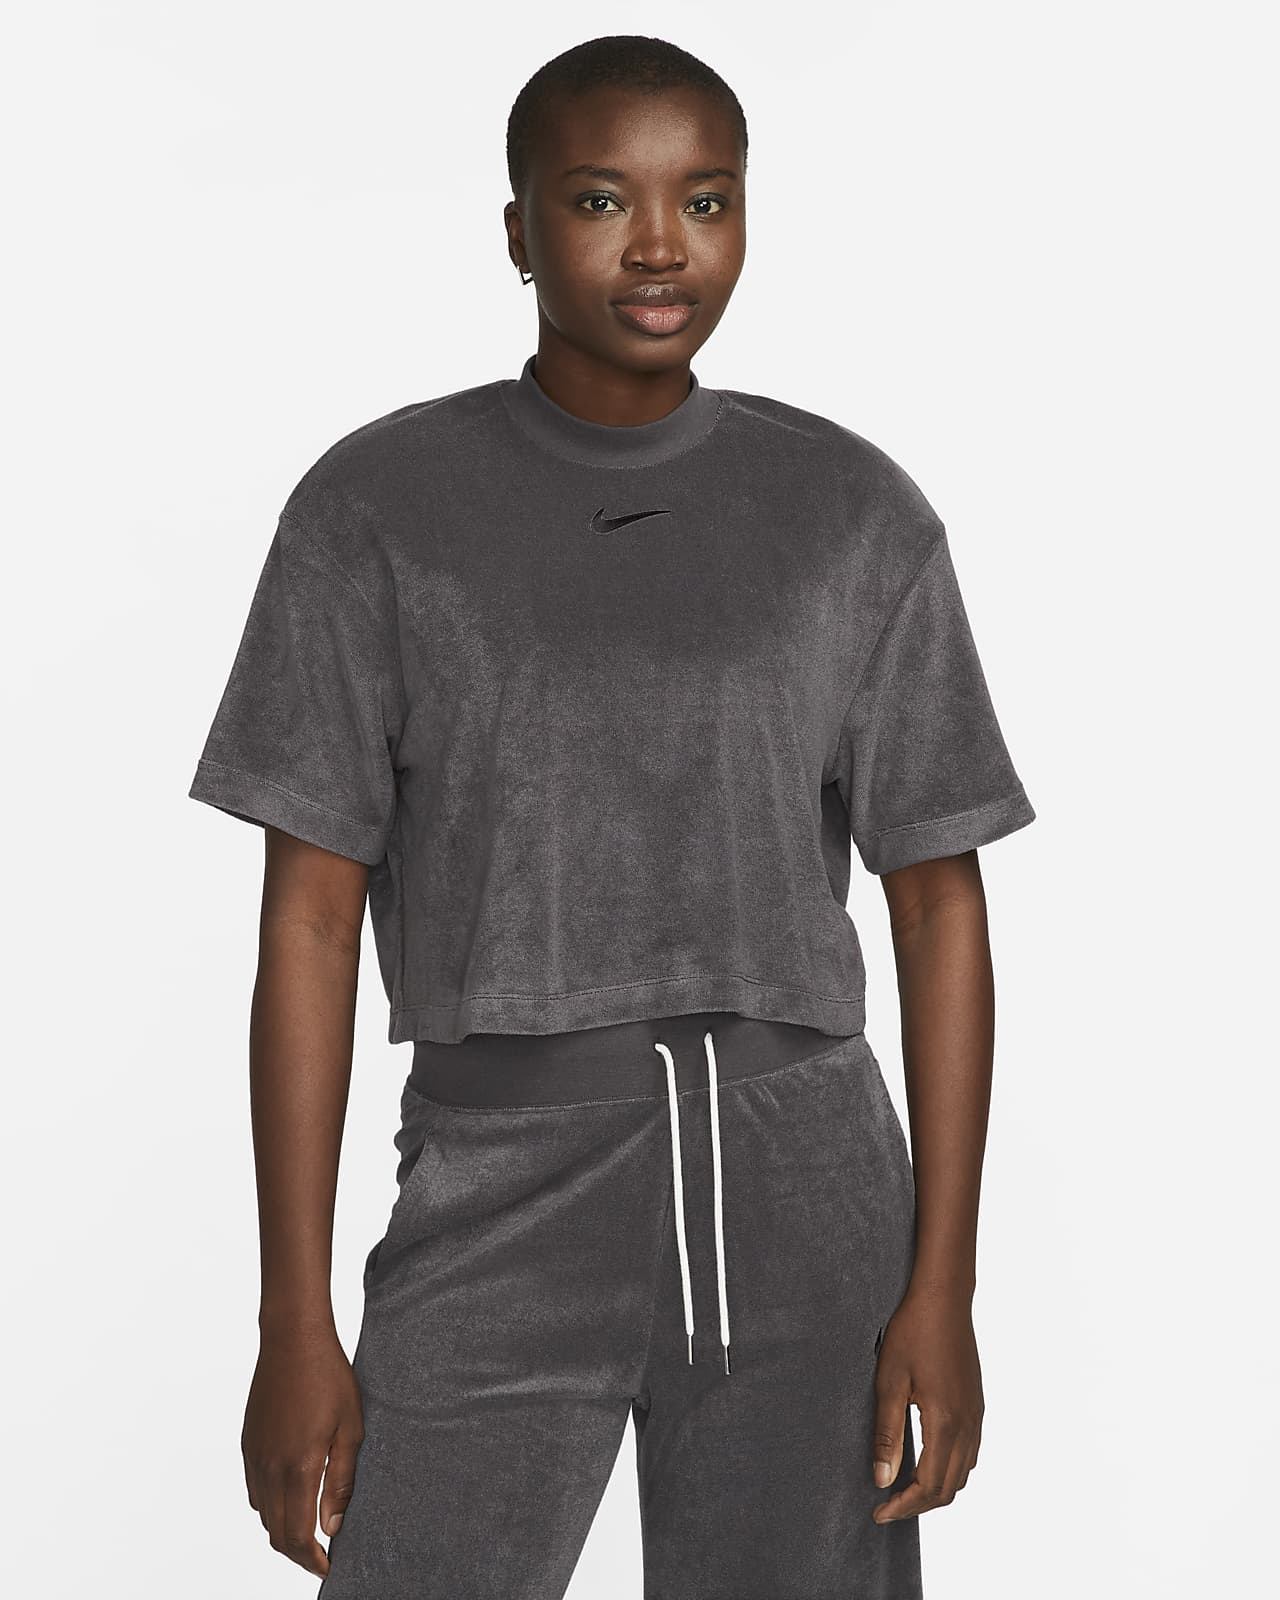 Women's Activewear Clothing, Nike T-Shirt in Weiß mit Logo und Ärmeln mit  kontrastierendem Punktemuster, Glyder